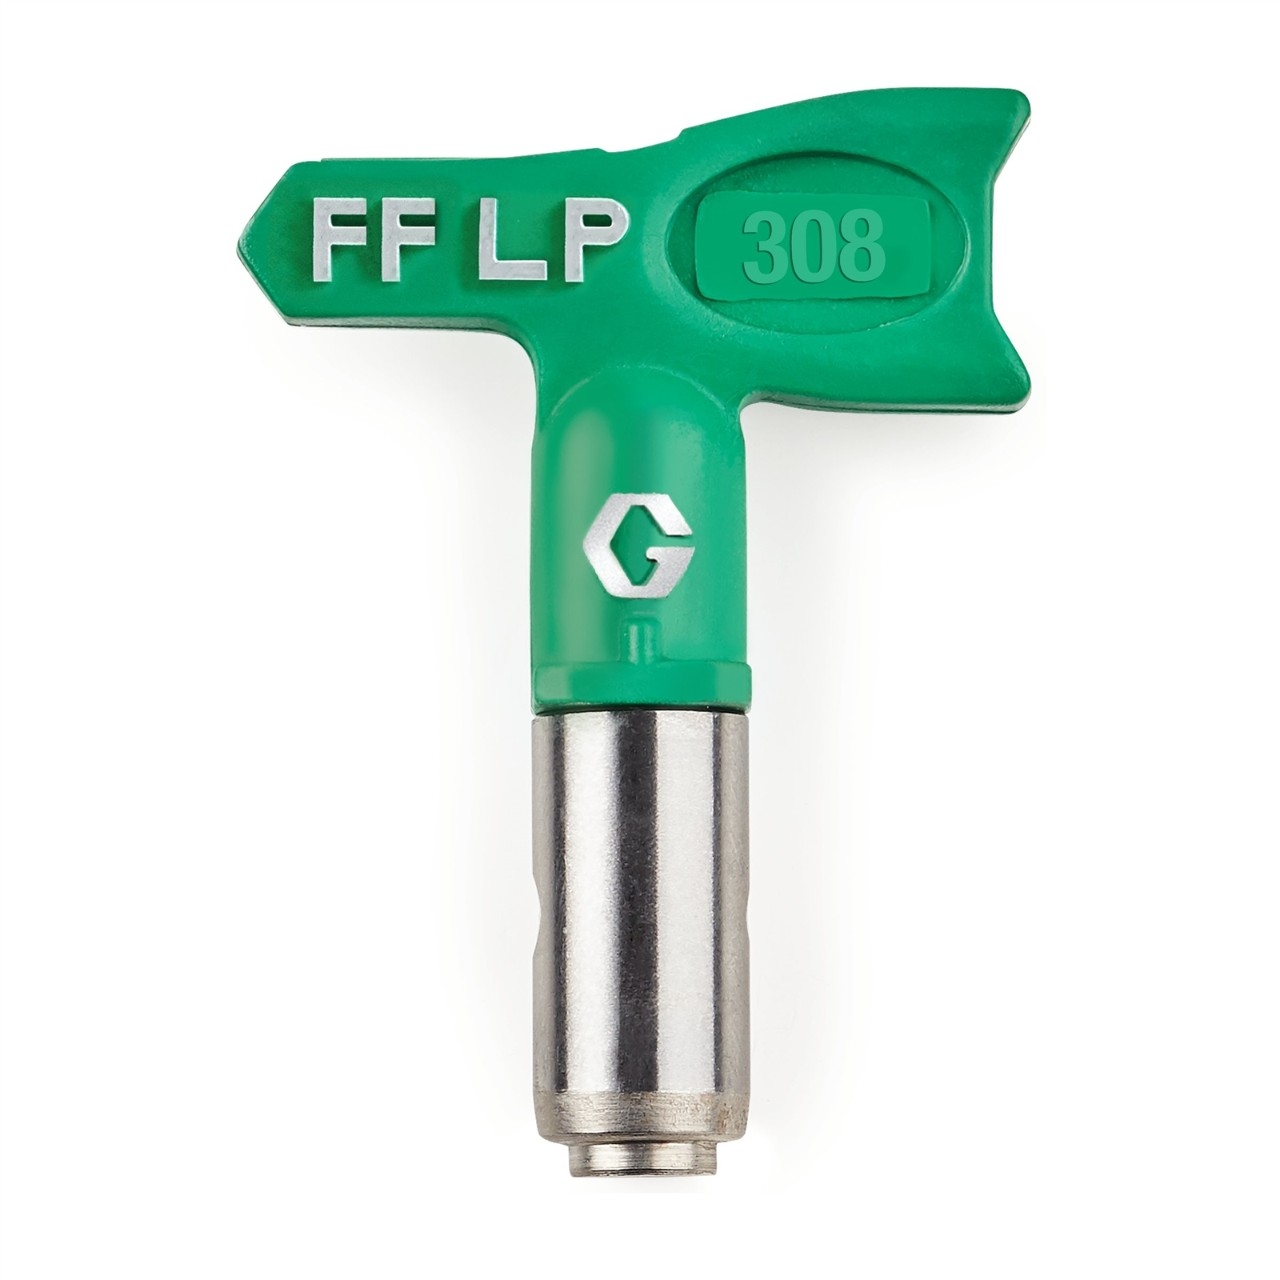 Duză FFLP SwitchTip 308 pentru finisaj fin la presiune scăzută, compatibilă cu RAC X